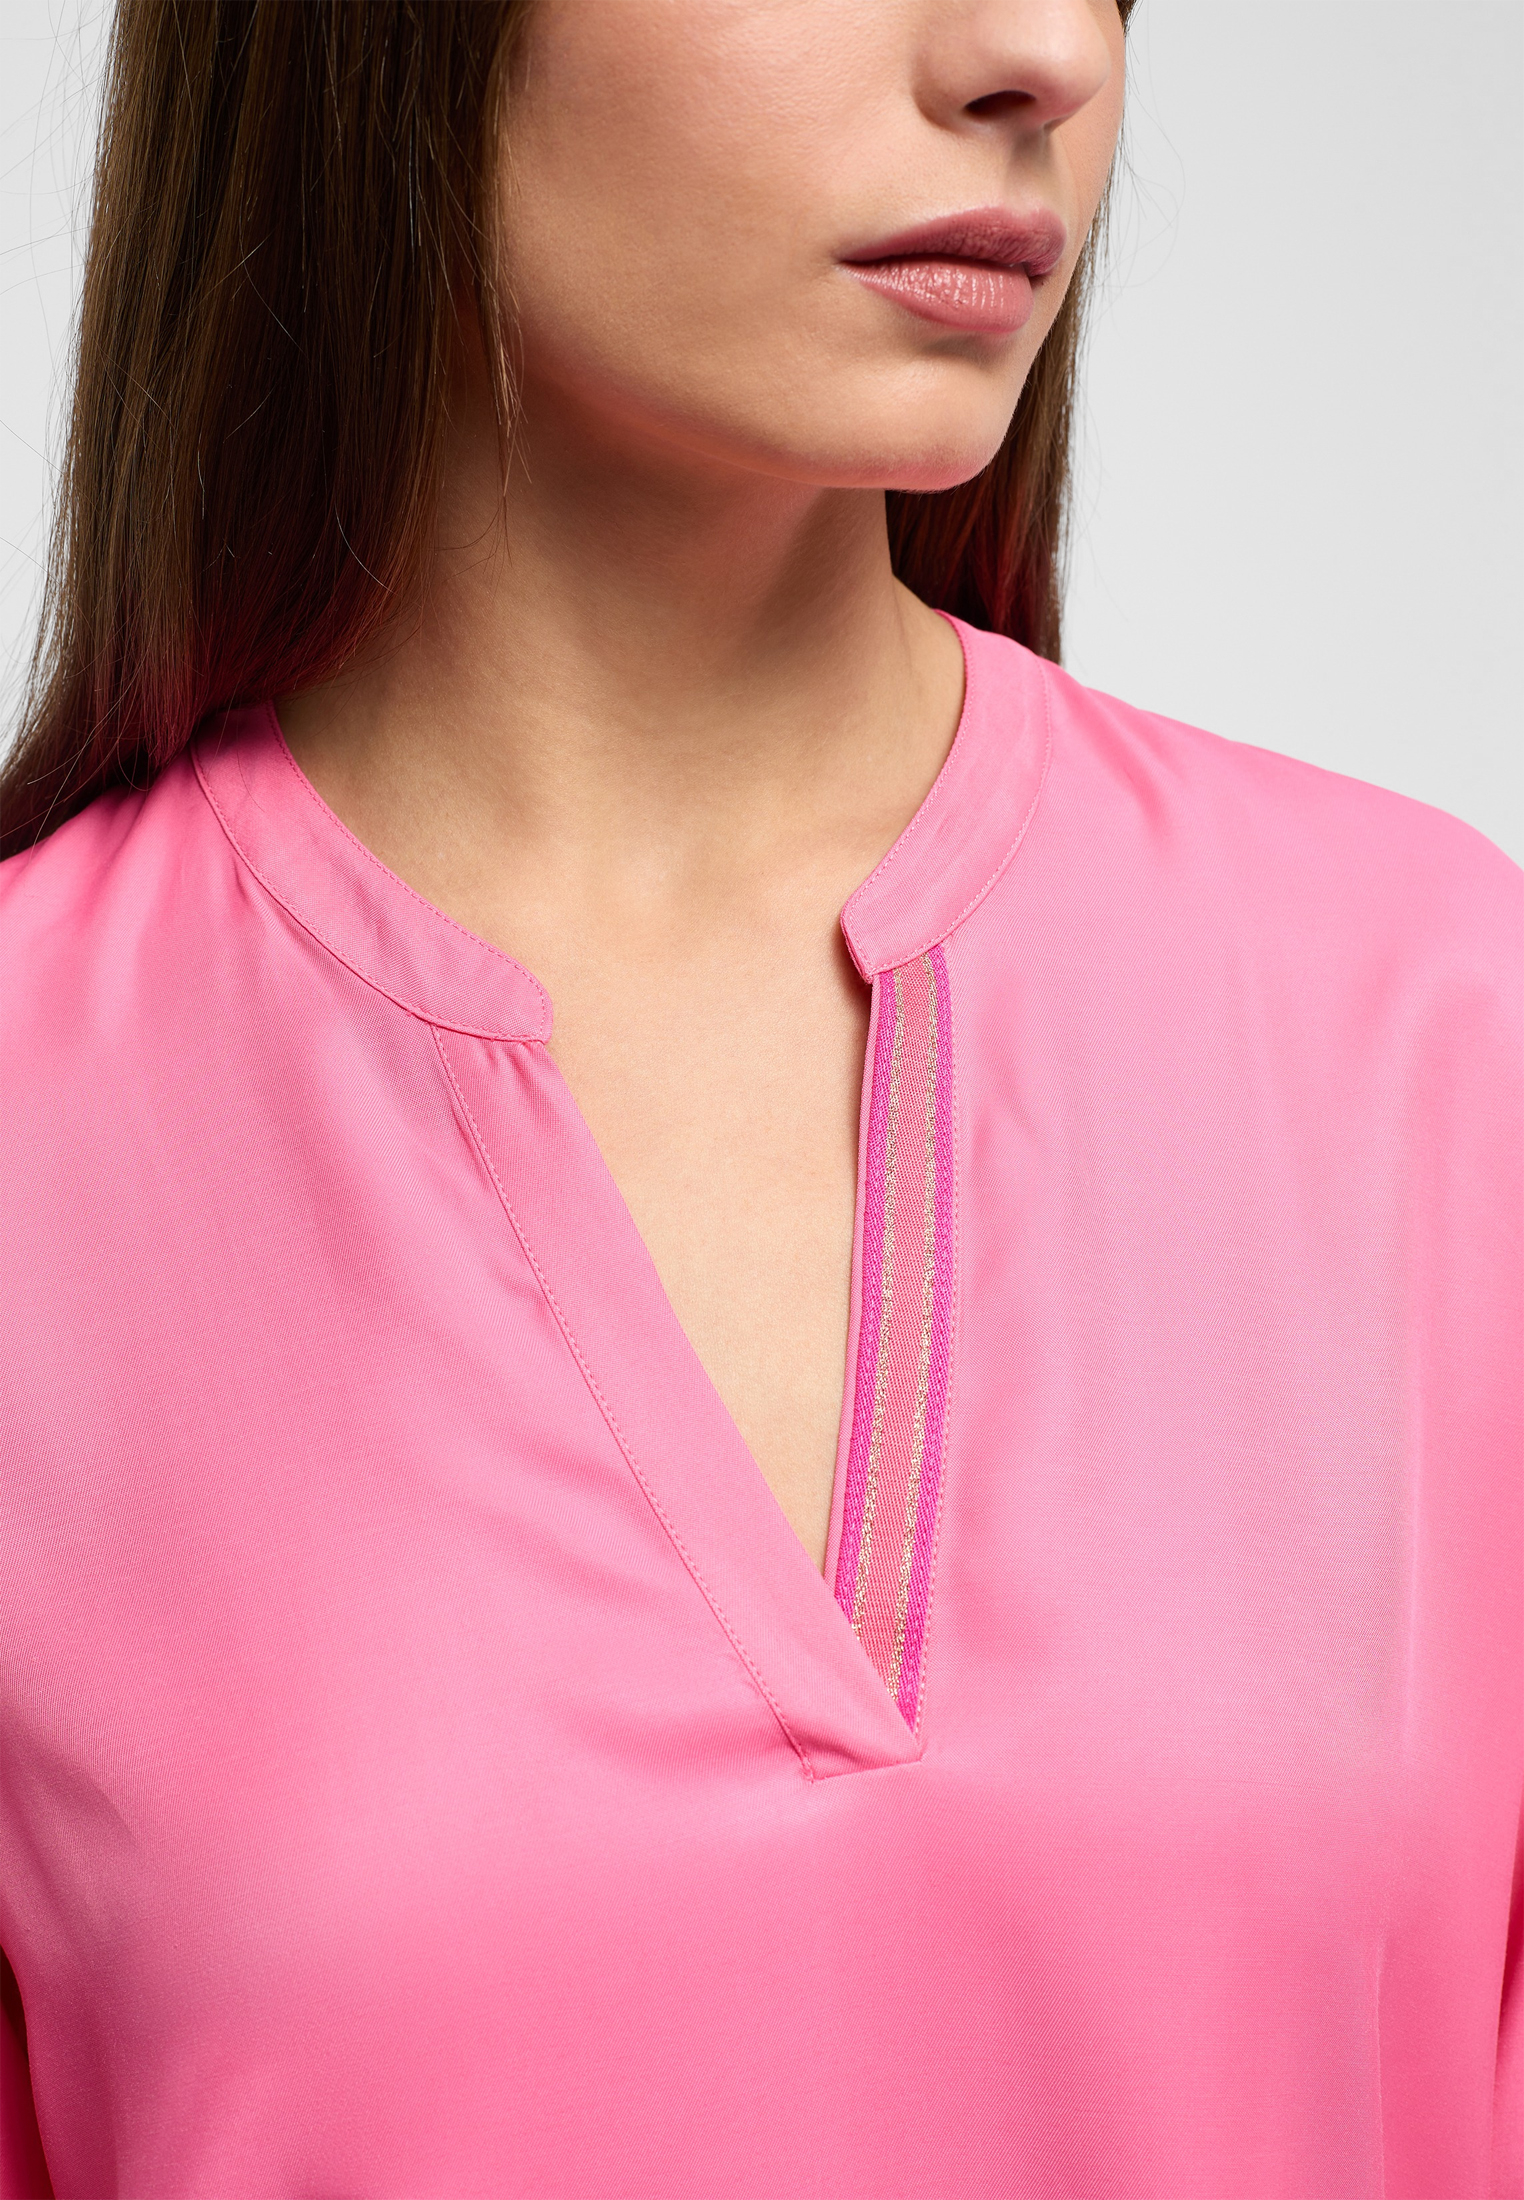 Viscose Shirt Bluse in pink unifarben | pink | 42 | Langarm |  2BL04272-15-21-42-1/1